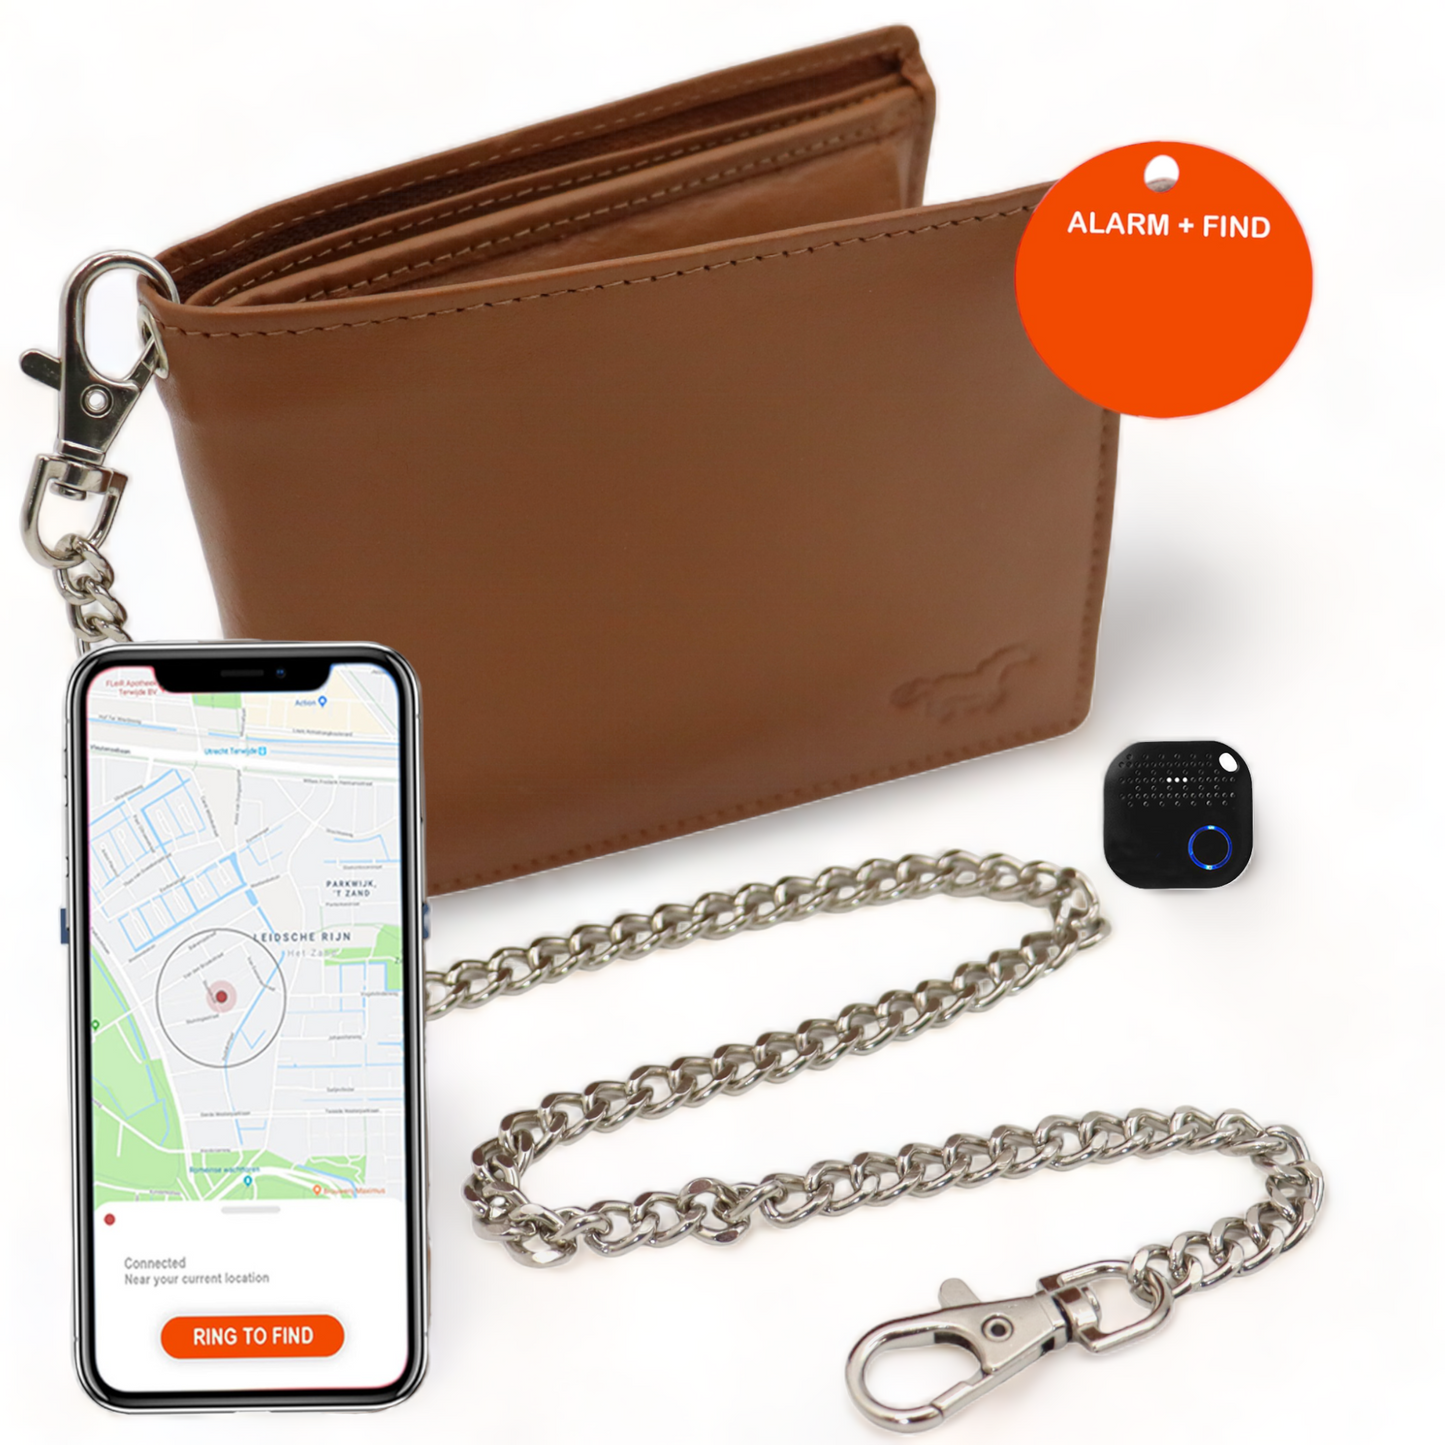 Umfangreiches Portemonnaie Herren mit Tracker – Portemonnaie mit Kette – Bluetooth-Tracker und Kette